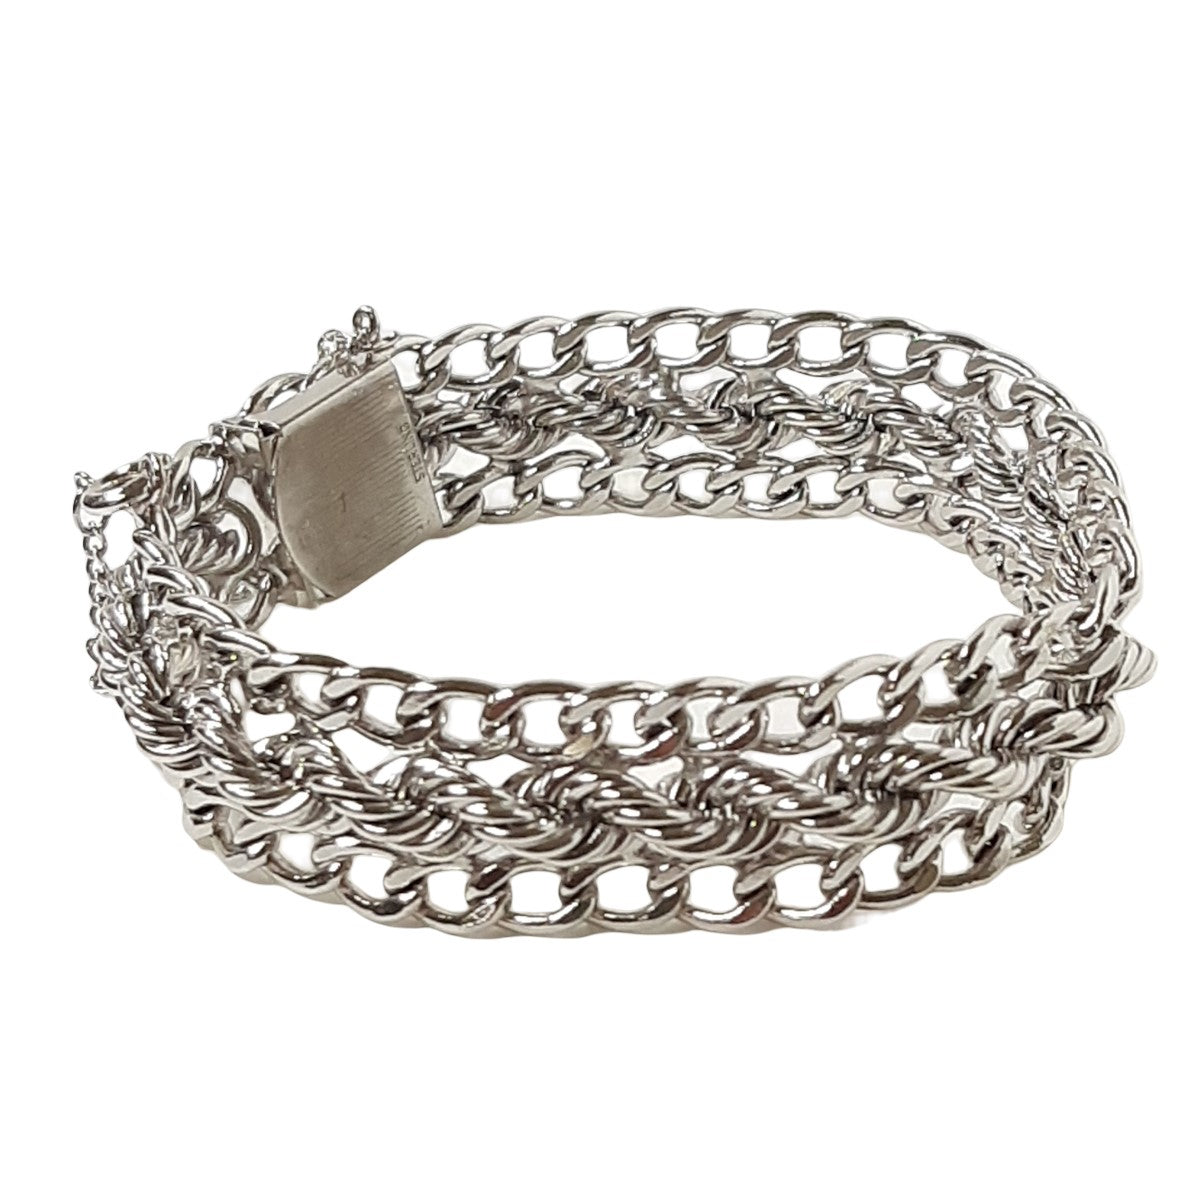 ヴィンテージ シルバー925 カーブ&ロープチェーン ブレスレット 41g / Vintage Sterling Curb & Rope Chain Bracelet